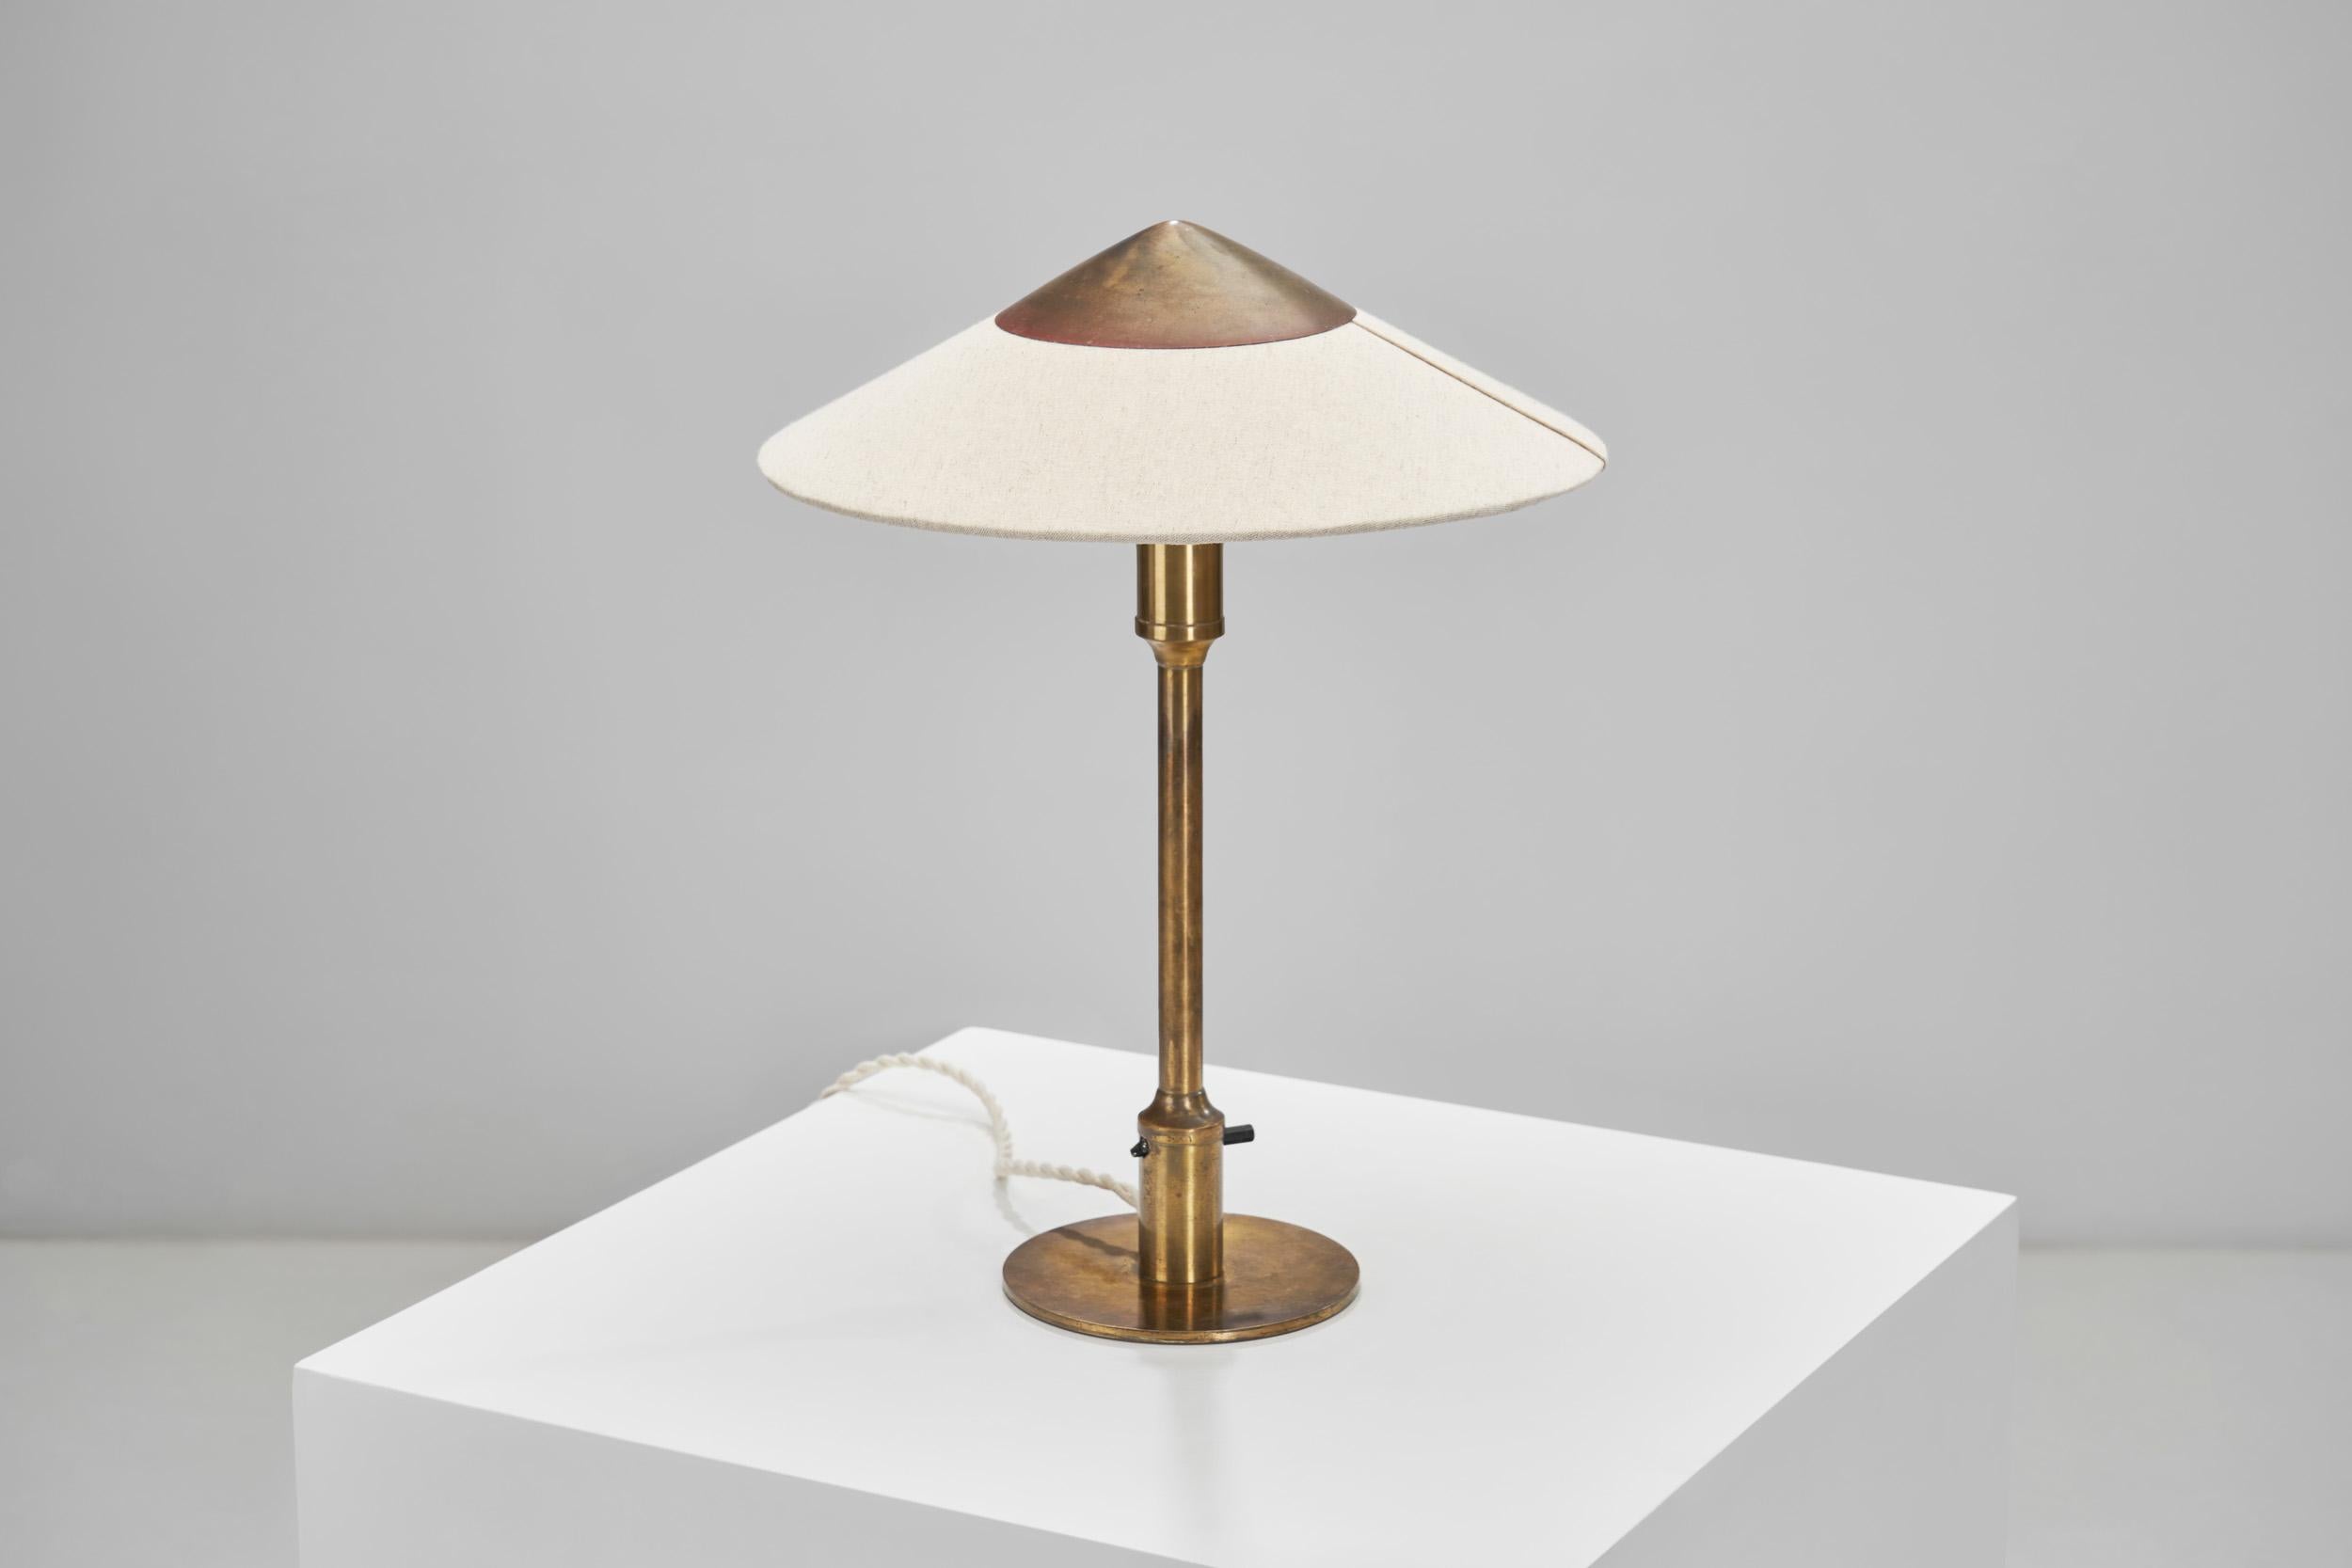 Niels Rasmussen Thykier “Kongelys T3” Table Lamp for Fog & Mörup, Denmark 1940s For Sale 3